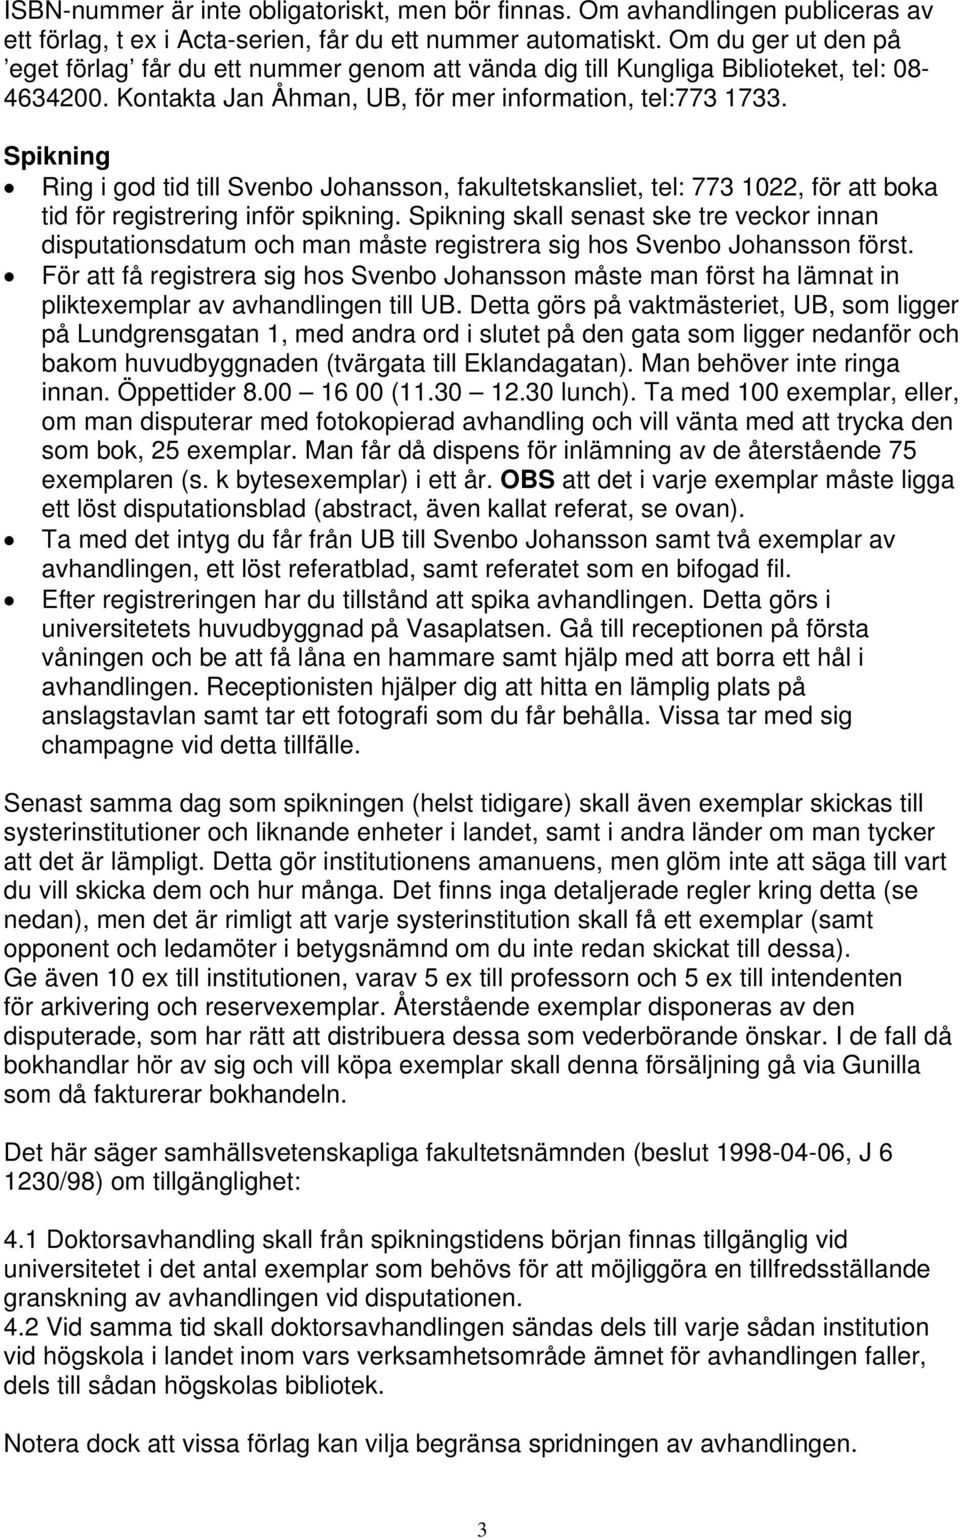 Spikning Ring i god tid till Svenbo Johansson, fakultetskansliet, tel: 773 1022, för att boka tid för registrering inför spikning.